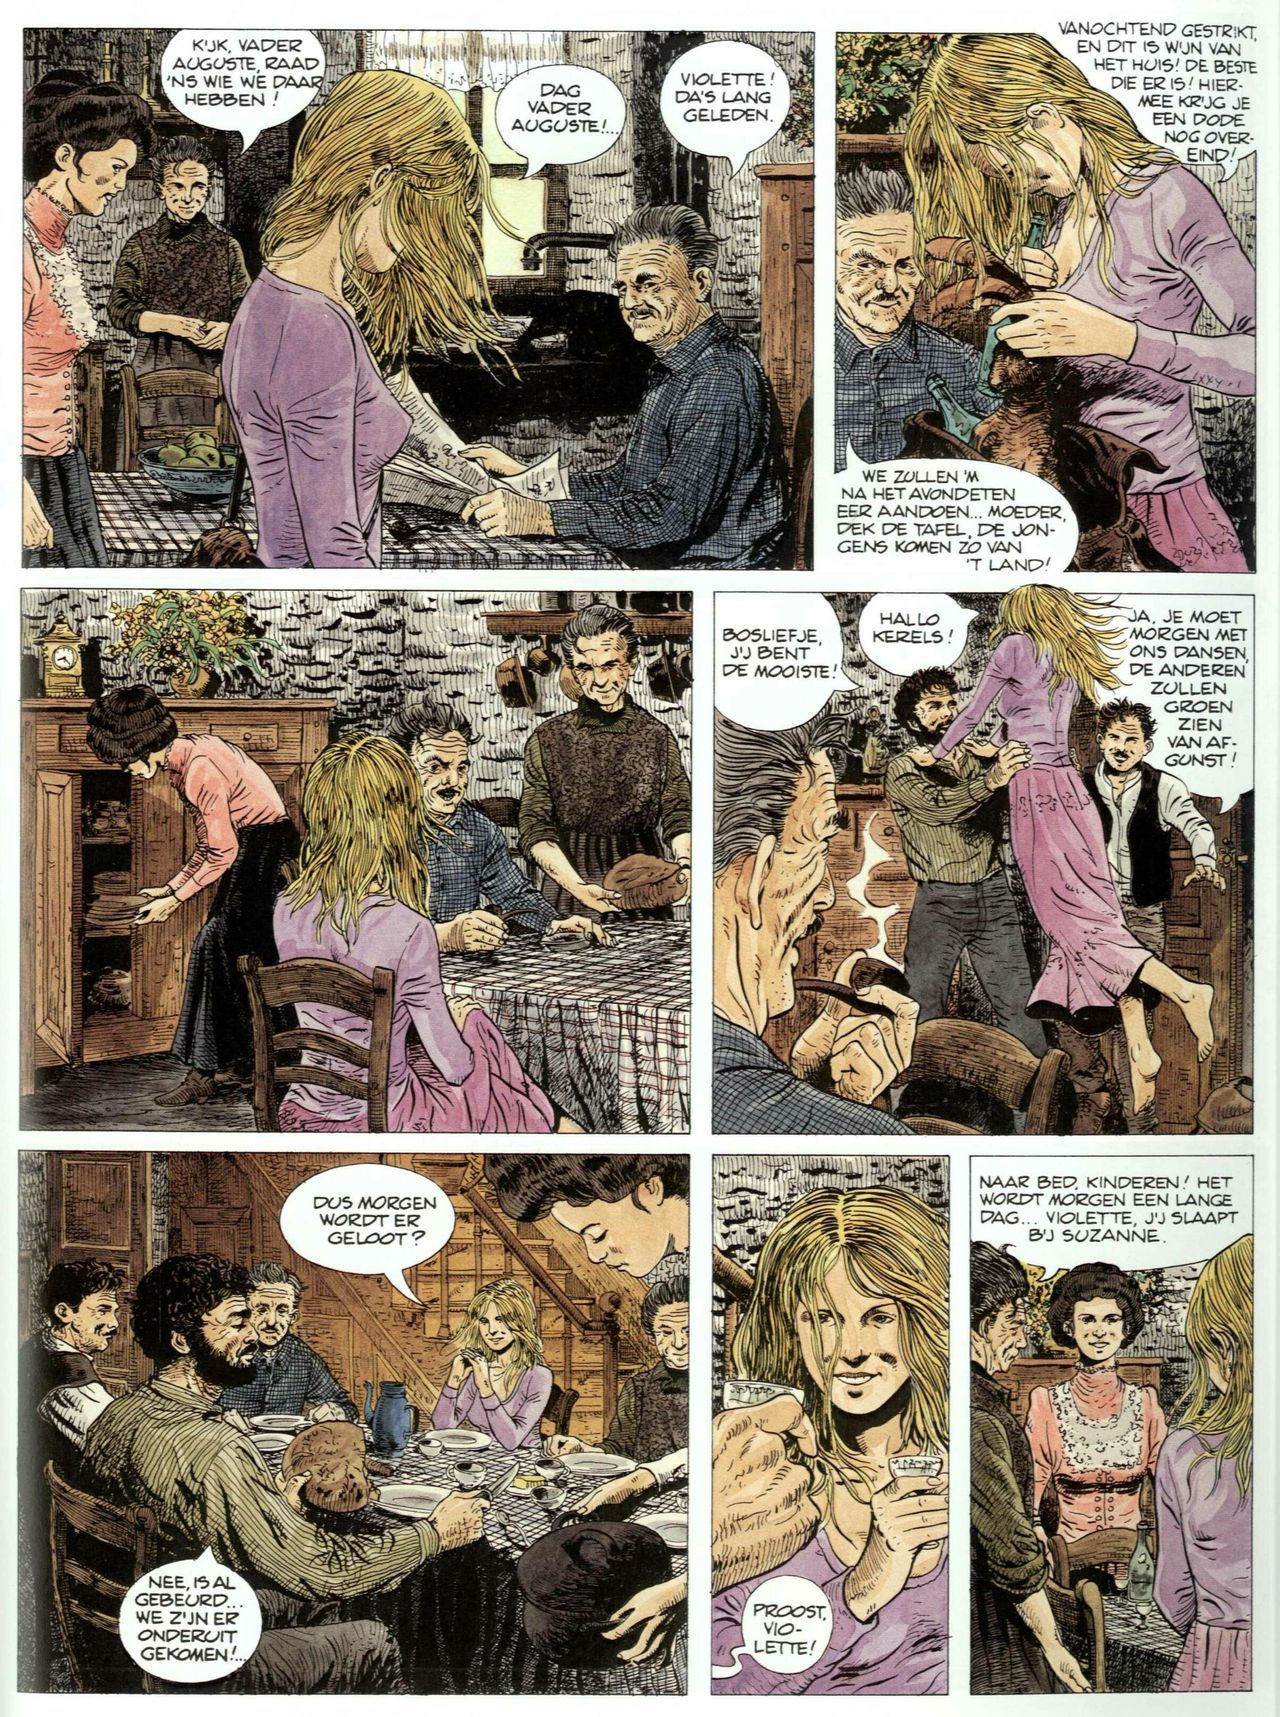 Bosliefje - 01 - Julien (Dutch) Franstalige strips die op deze site staan, hier is de Nederlandse uitgave! 38